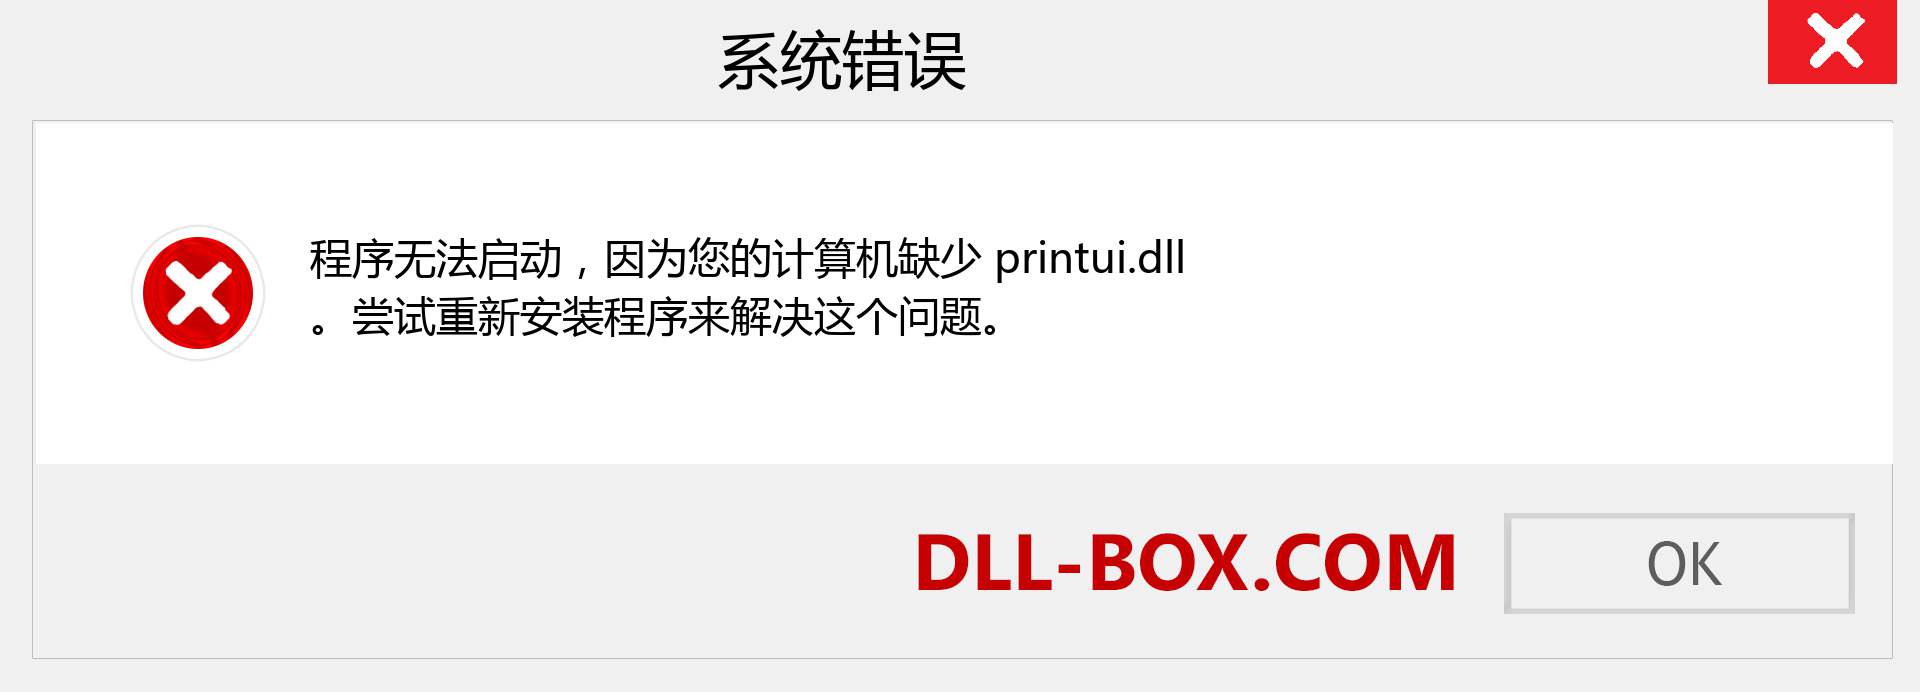 printui.dll 文件丢失？。 适用于 Windows 7、8、10 的下载 - 修复 Windows、照片、图像上的 printui dll 丢失错误